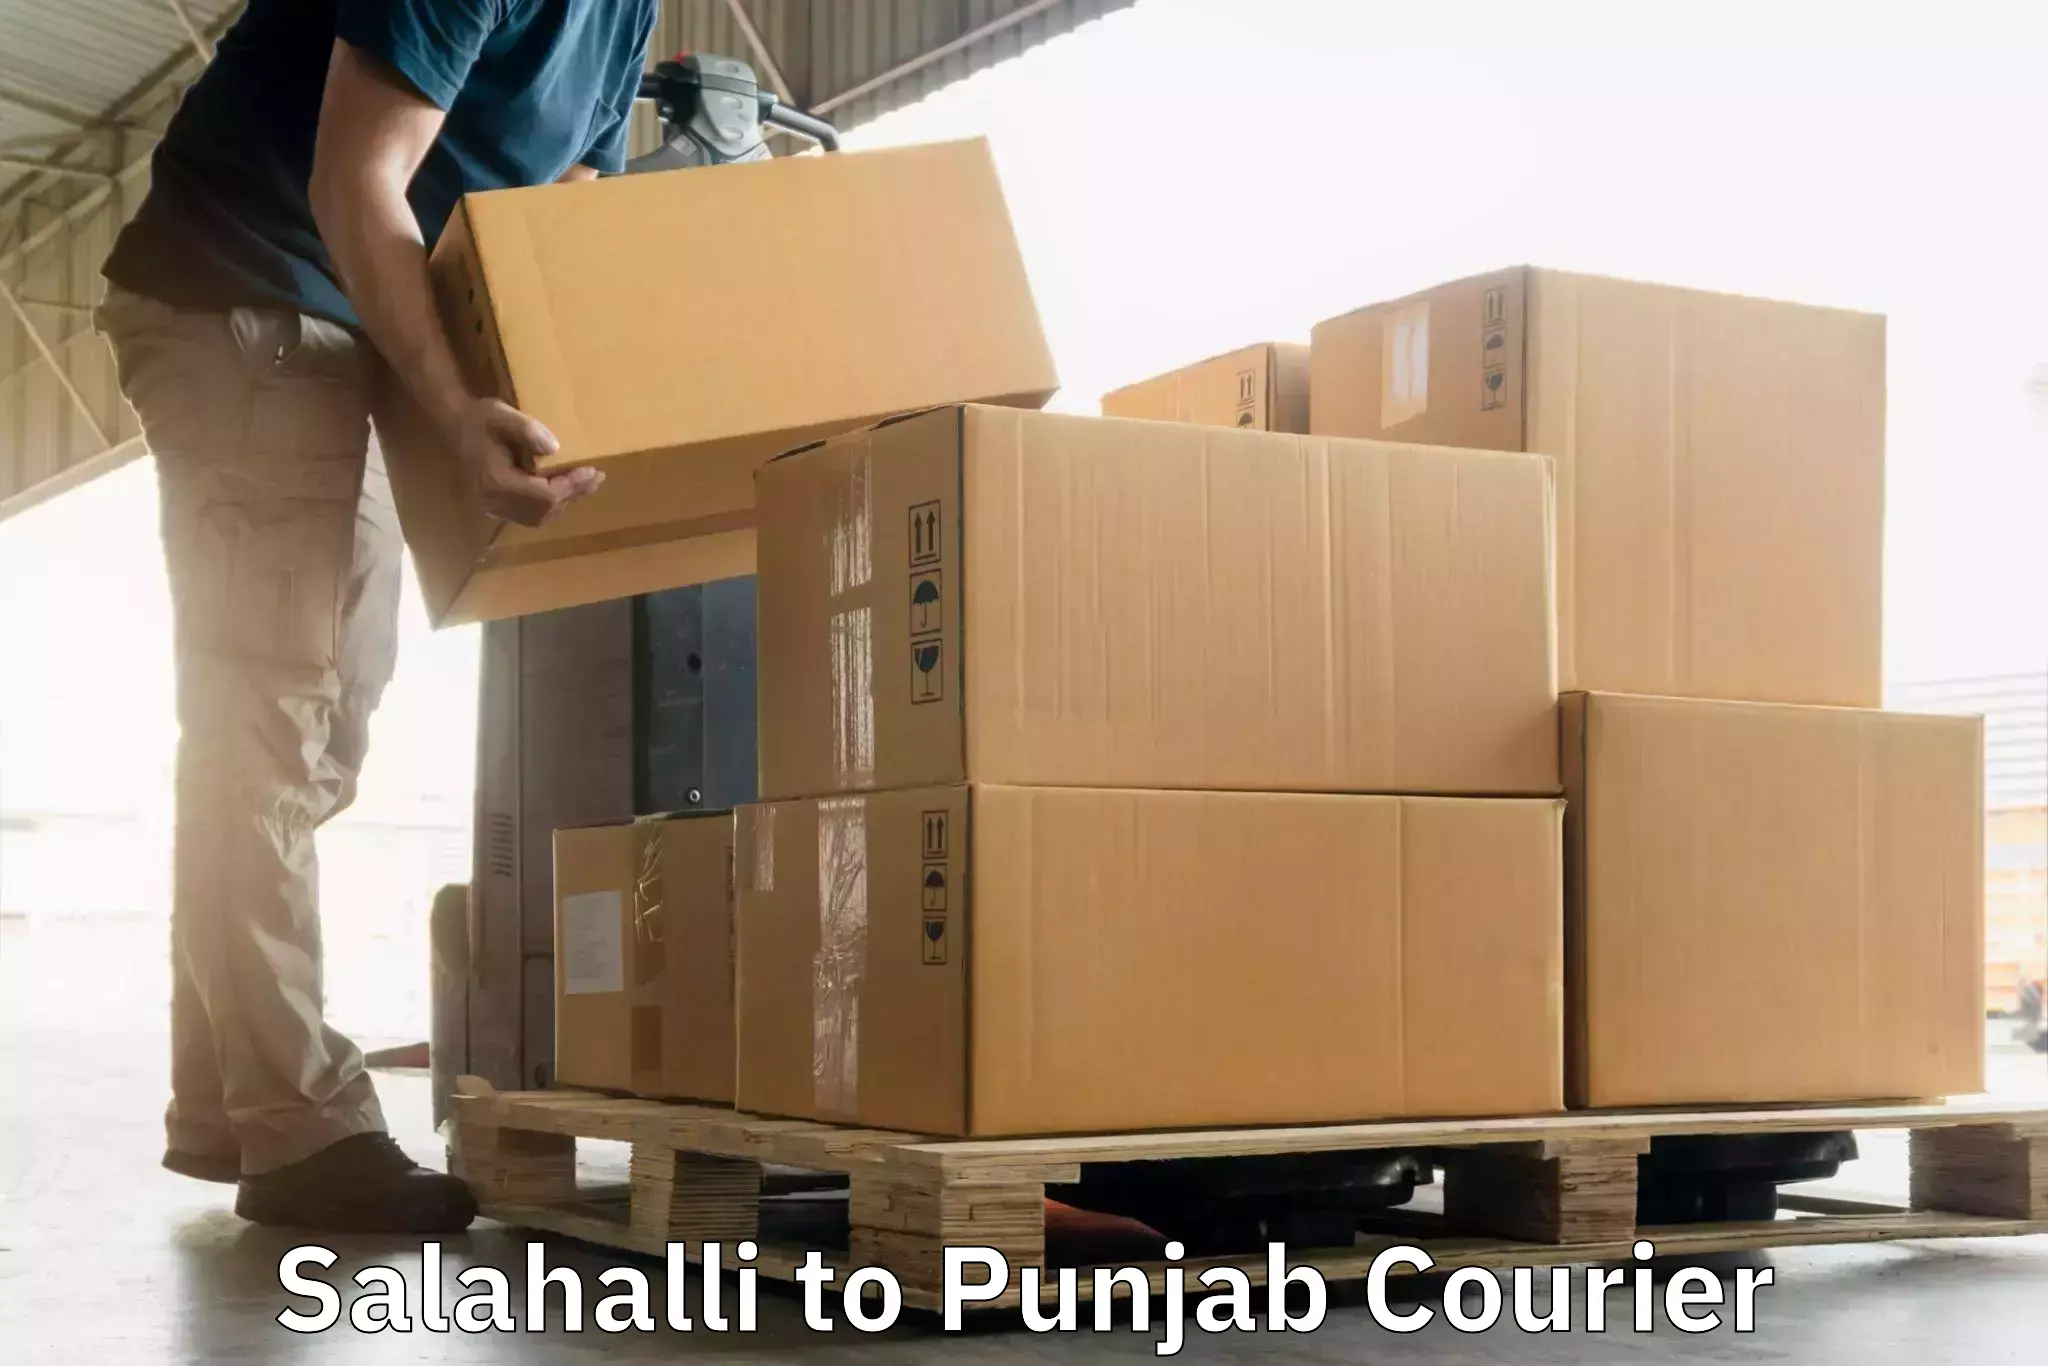 Seamless shipping experience Salahalli to Hoshiarpur